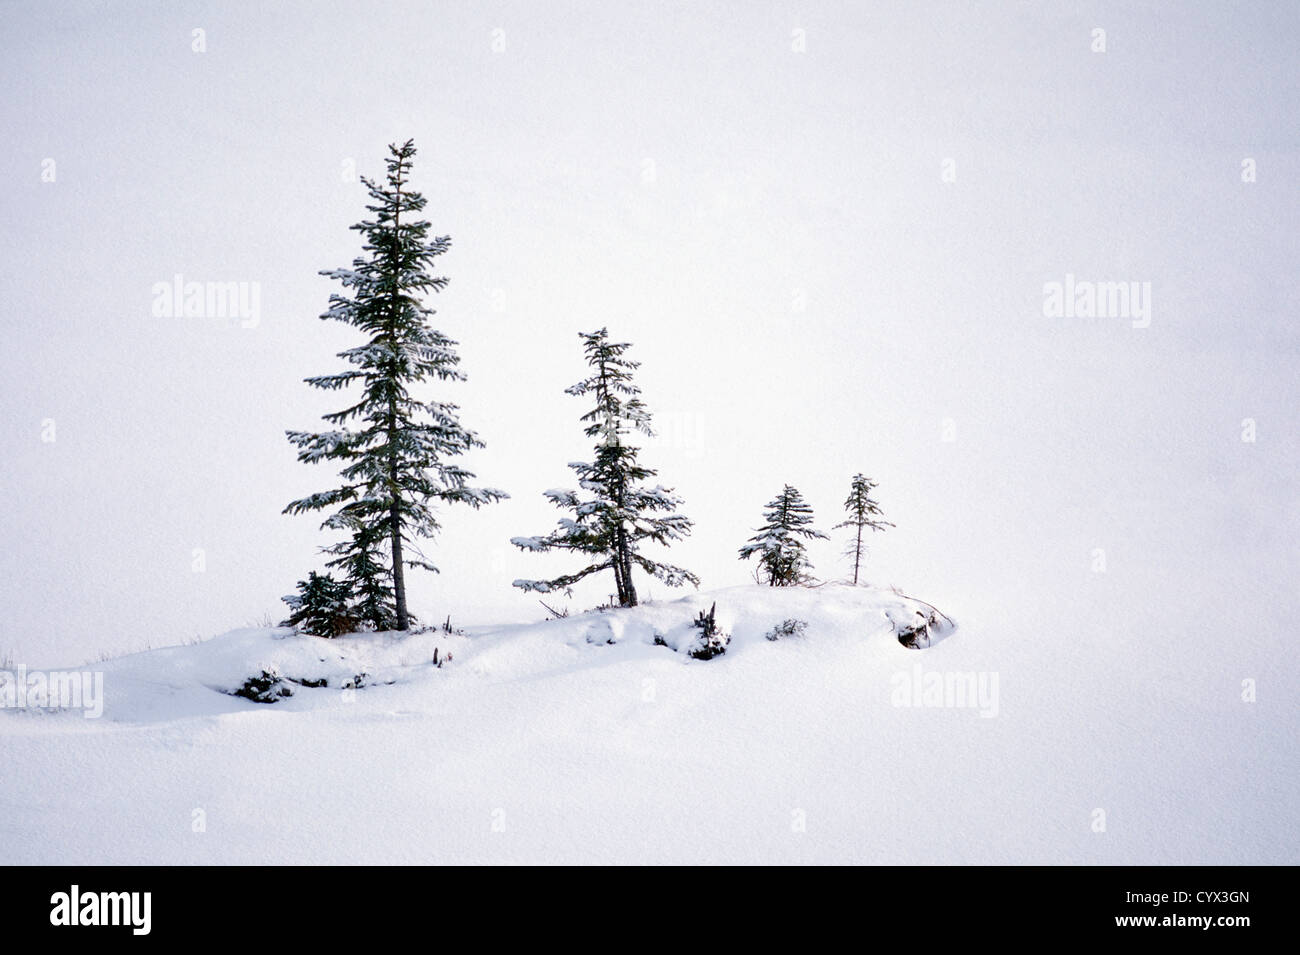 Winter-Wunderland Landschaft Szene - Nadelbäume wachsen in einer Zeile in einem Schnee-Whiteout-Einstellung Stockfoto